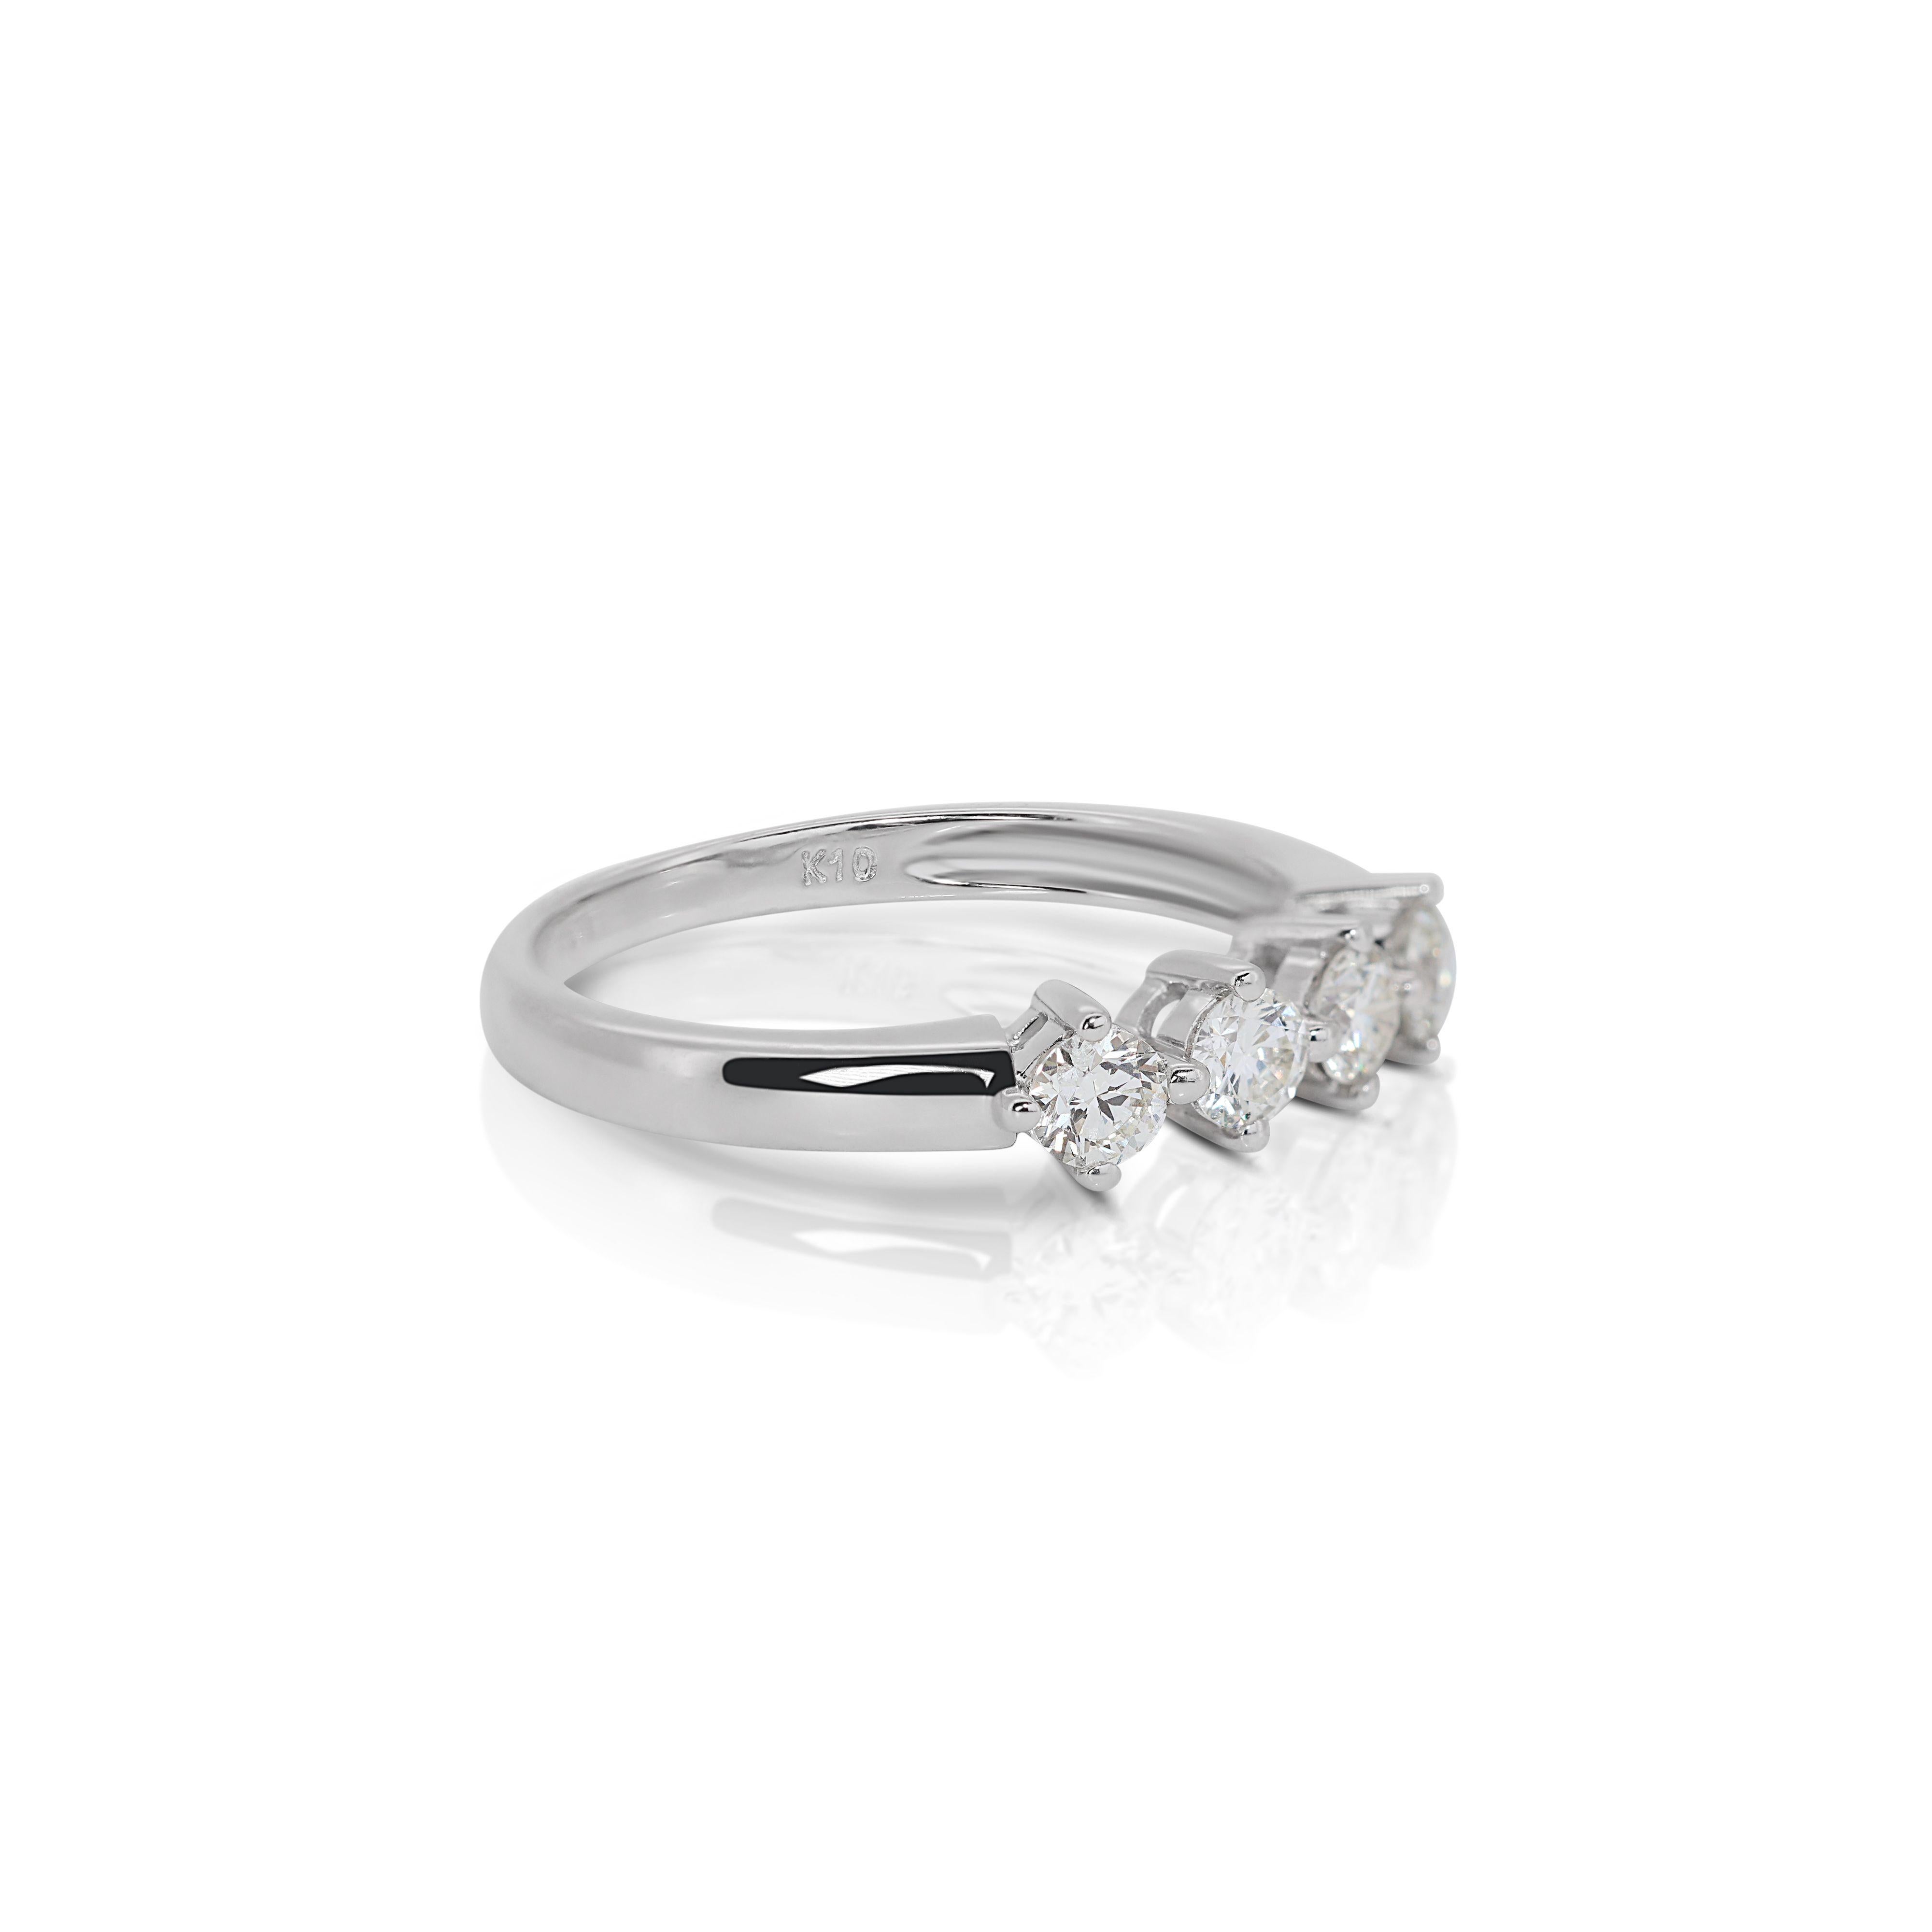 Nos bijoux en or blanc 10 carats sertis de diamants sont une véritable incarnation de l'élégance et de la sophistication intemporelles. Fabriqué avec précision et passion, ce chef-d'œuvre présente la fusion parfaite de l'or blanc et des diamants